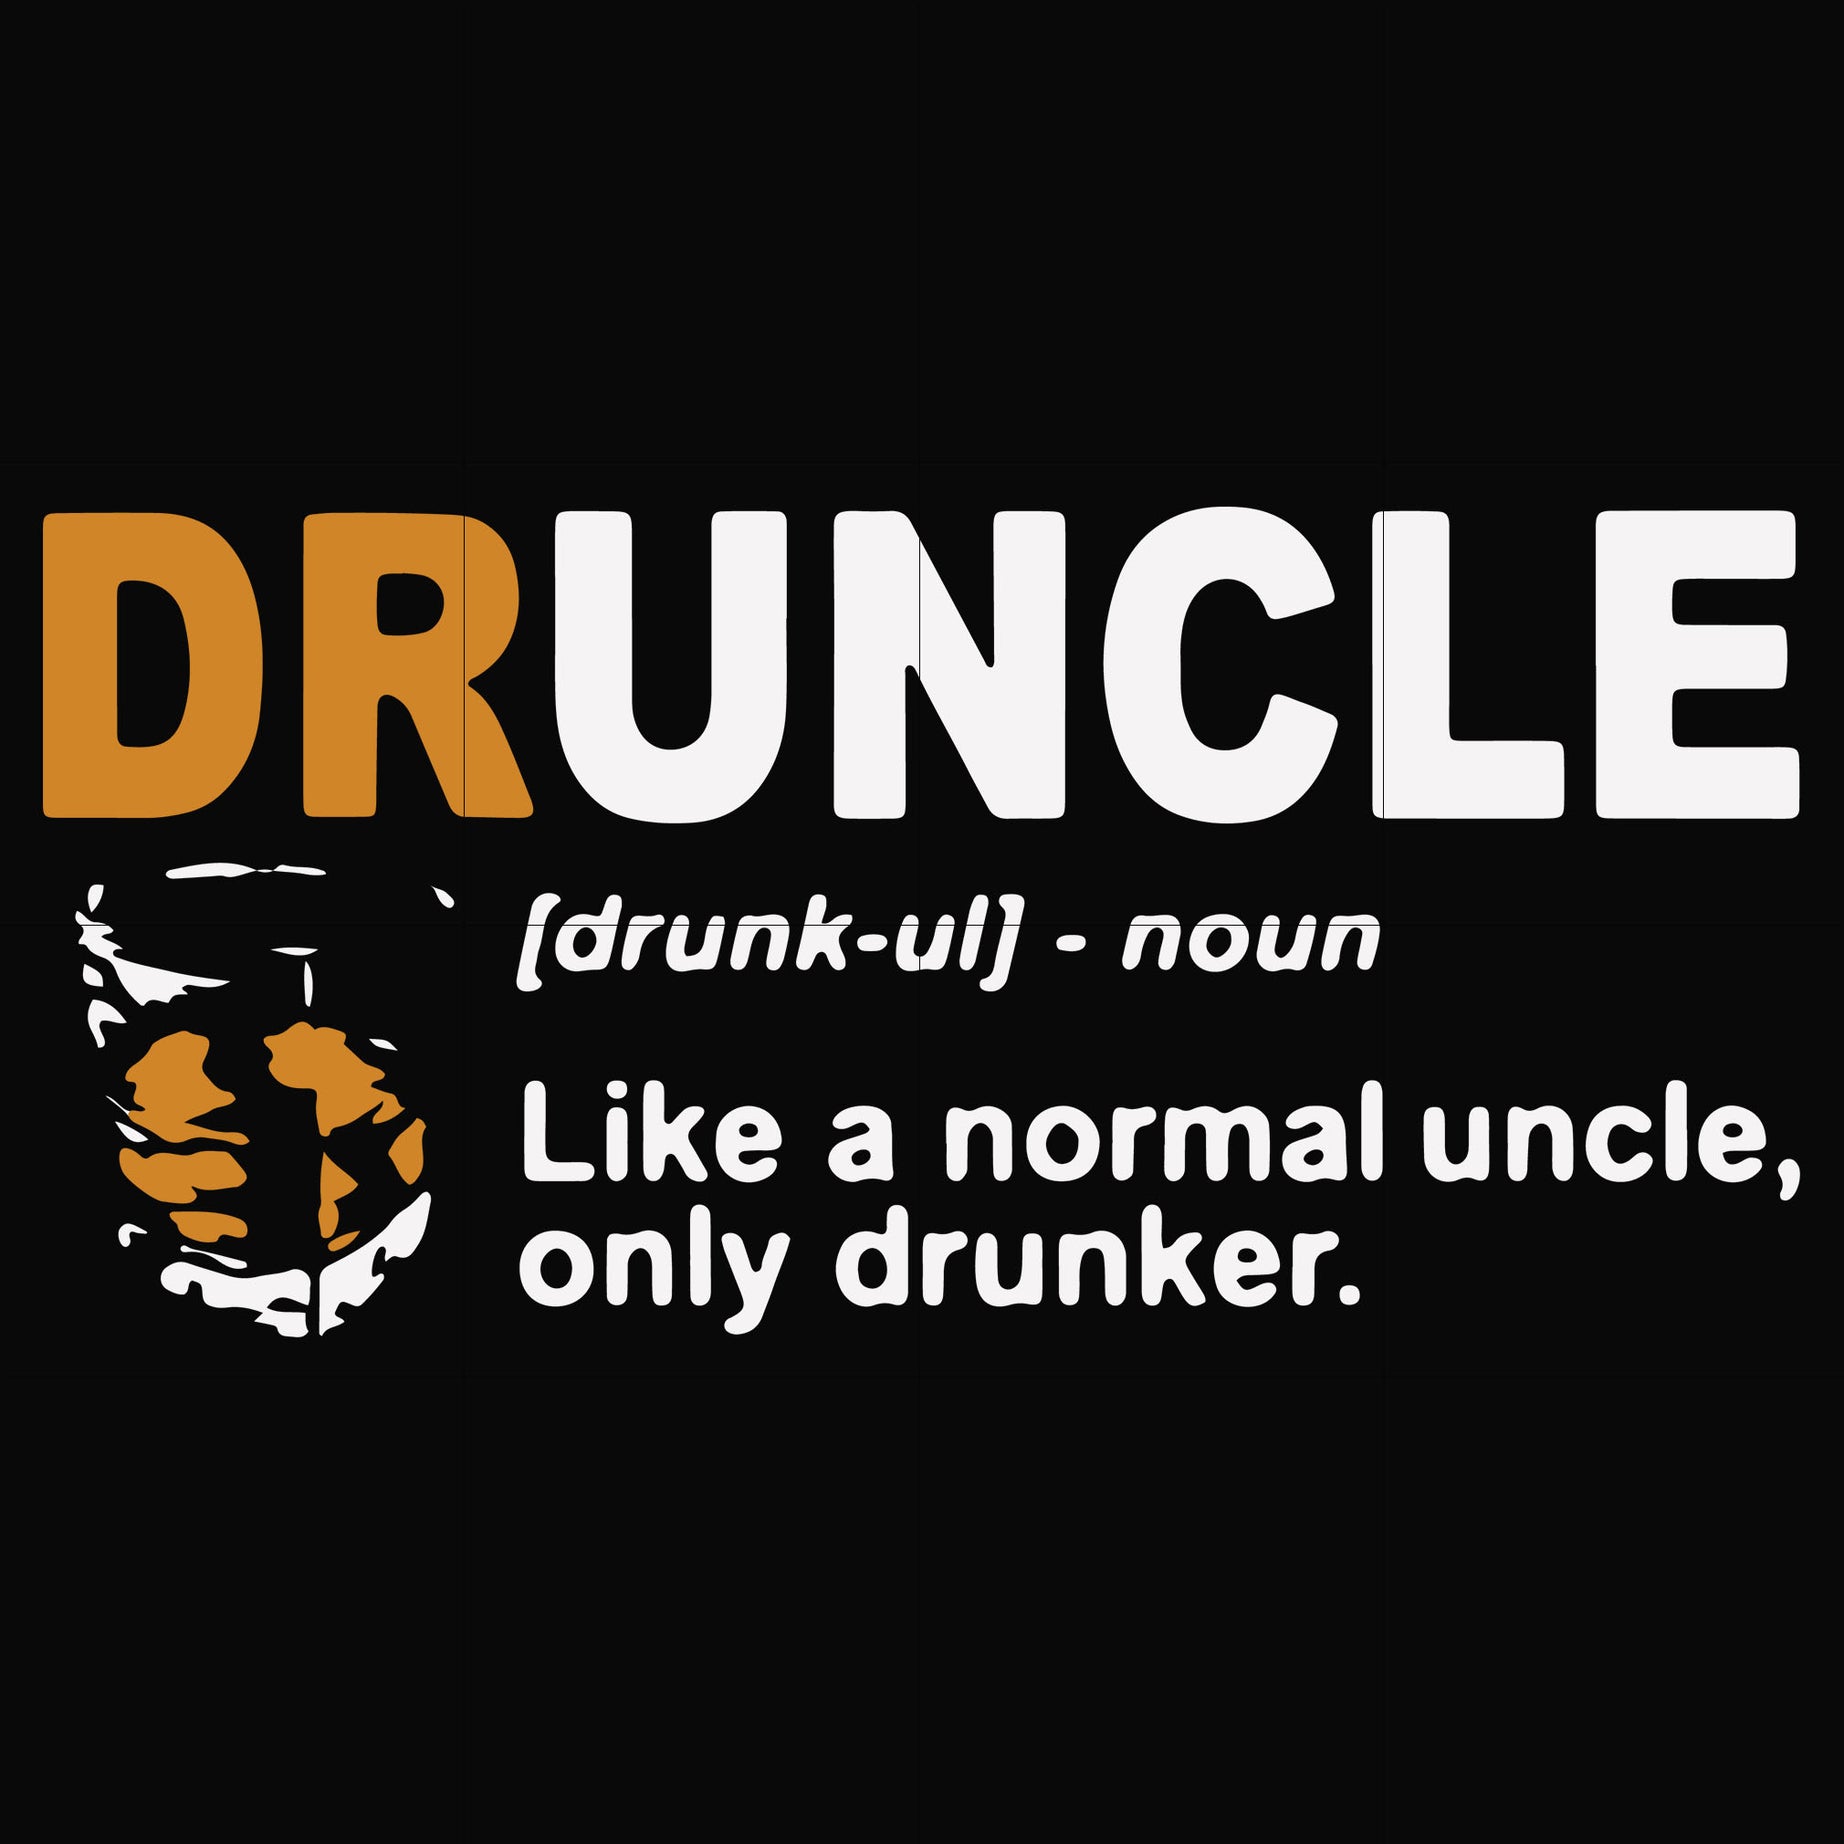 Druncle like a normal uncle only drunker svg, png, dxf, eps file FN000858